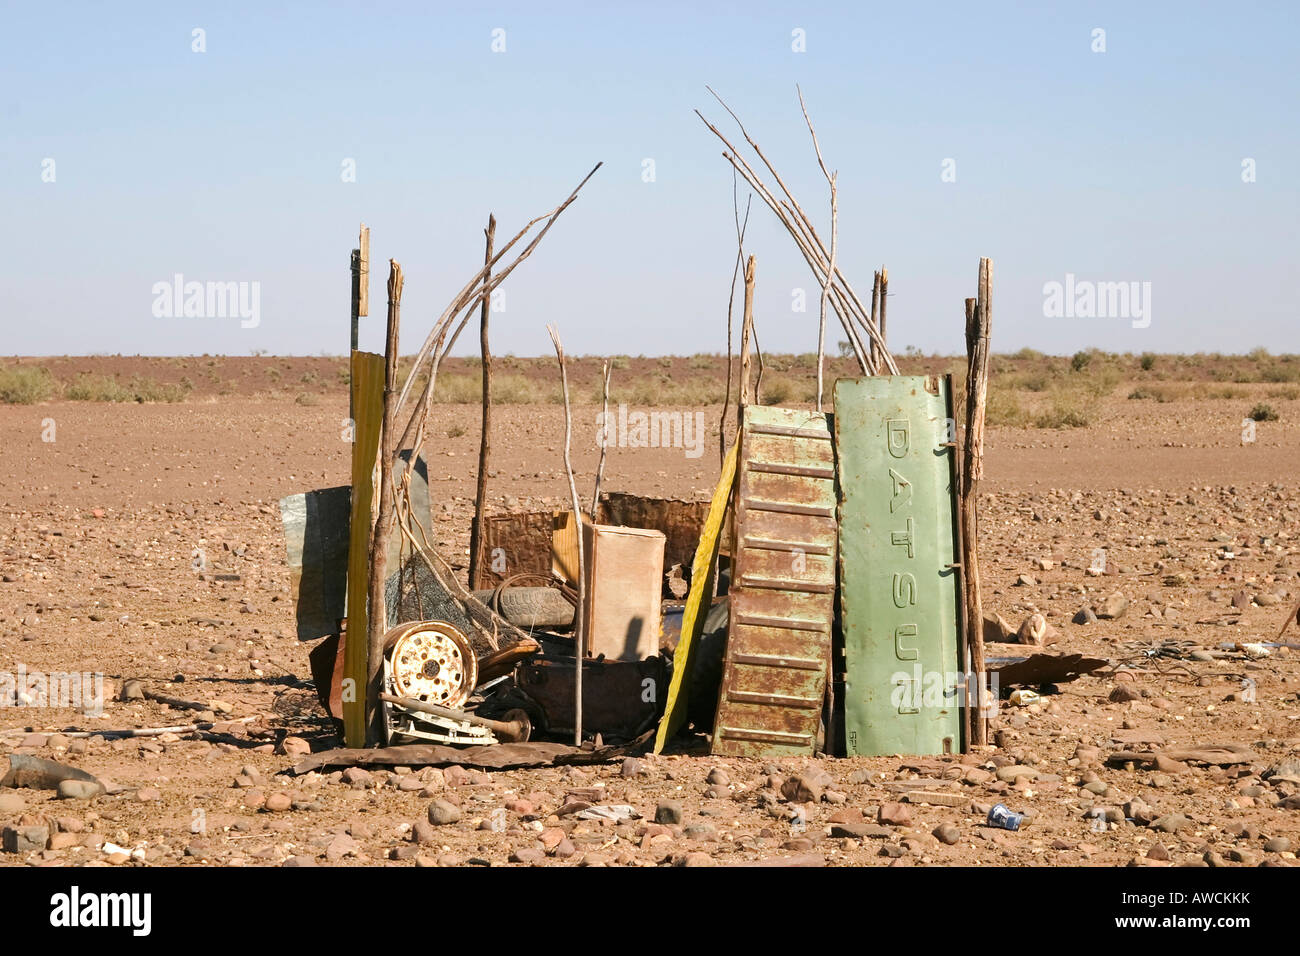 Petit baraquement se compose de ferraille, au sud de la Namibie, l'Afrique Banque D'Images